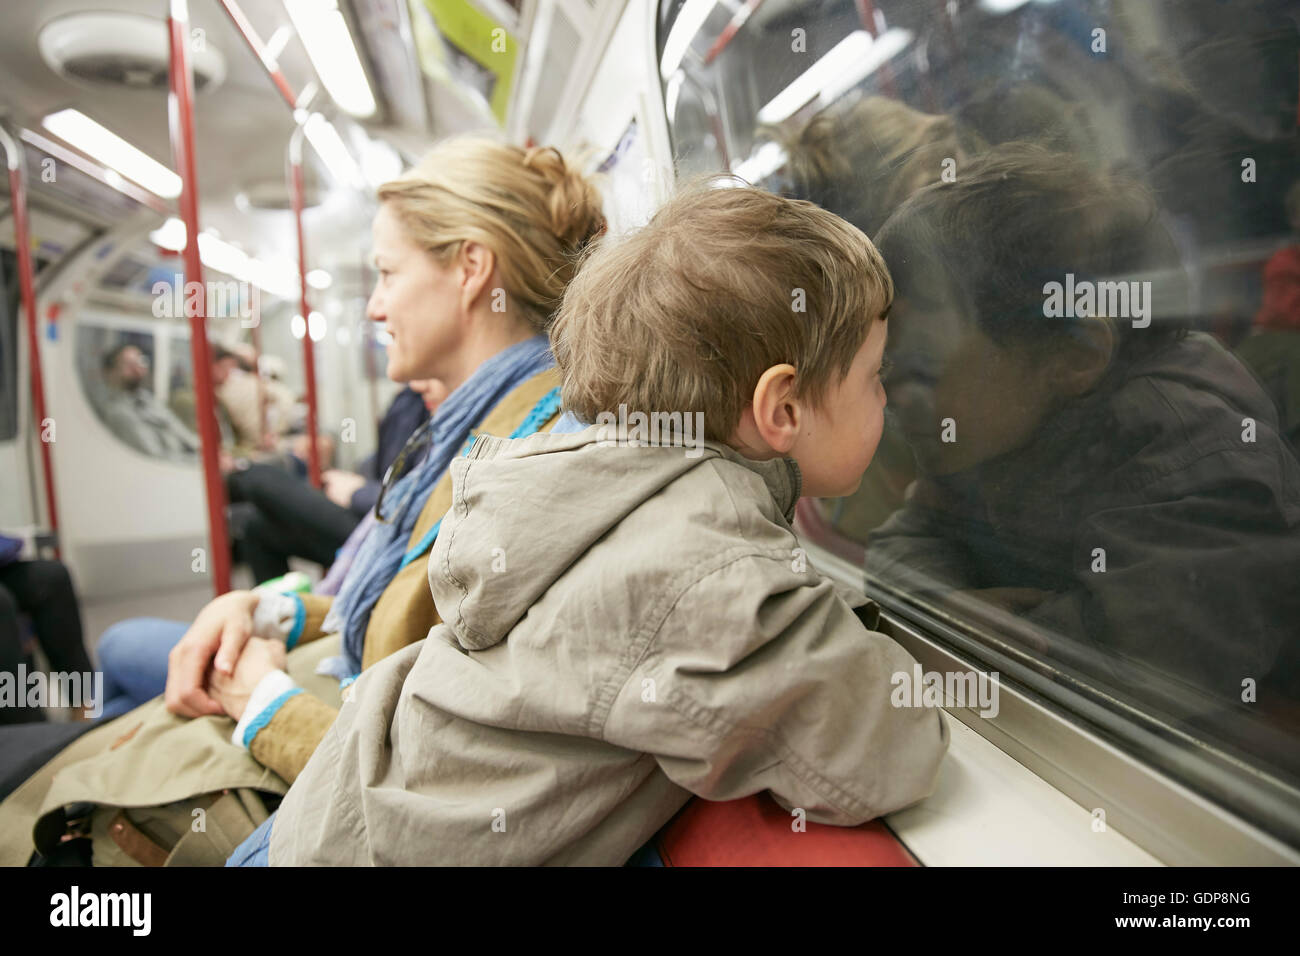 Garçon en train de tube de transport, face contre vitre Banque D'Images